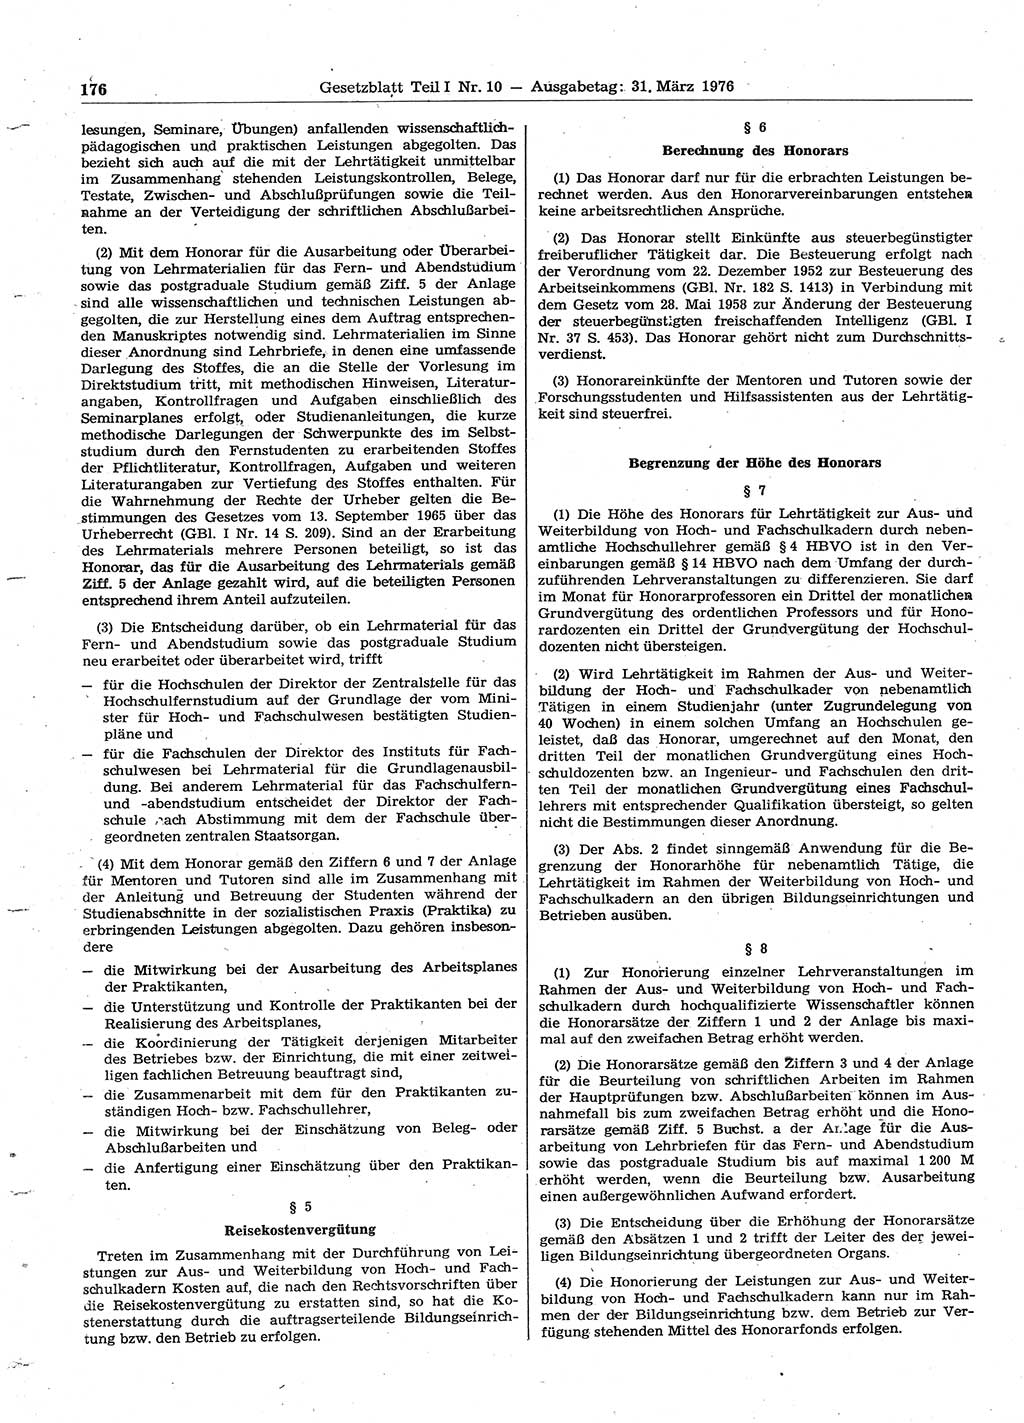 Gesetzblatt (GBl.) der Deutschen Demokratischen Republik (DDR) Teil Ⅰ 1976, Seite 176 (GBl. DDR Ⅰ 1976, S. 176)